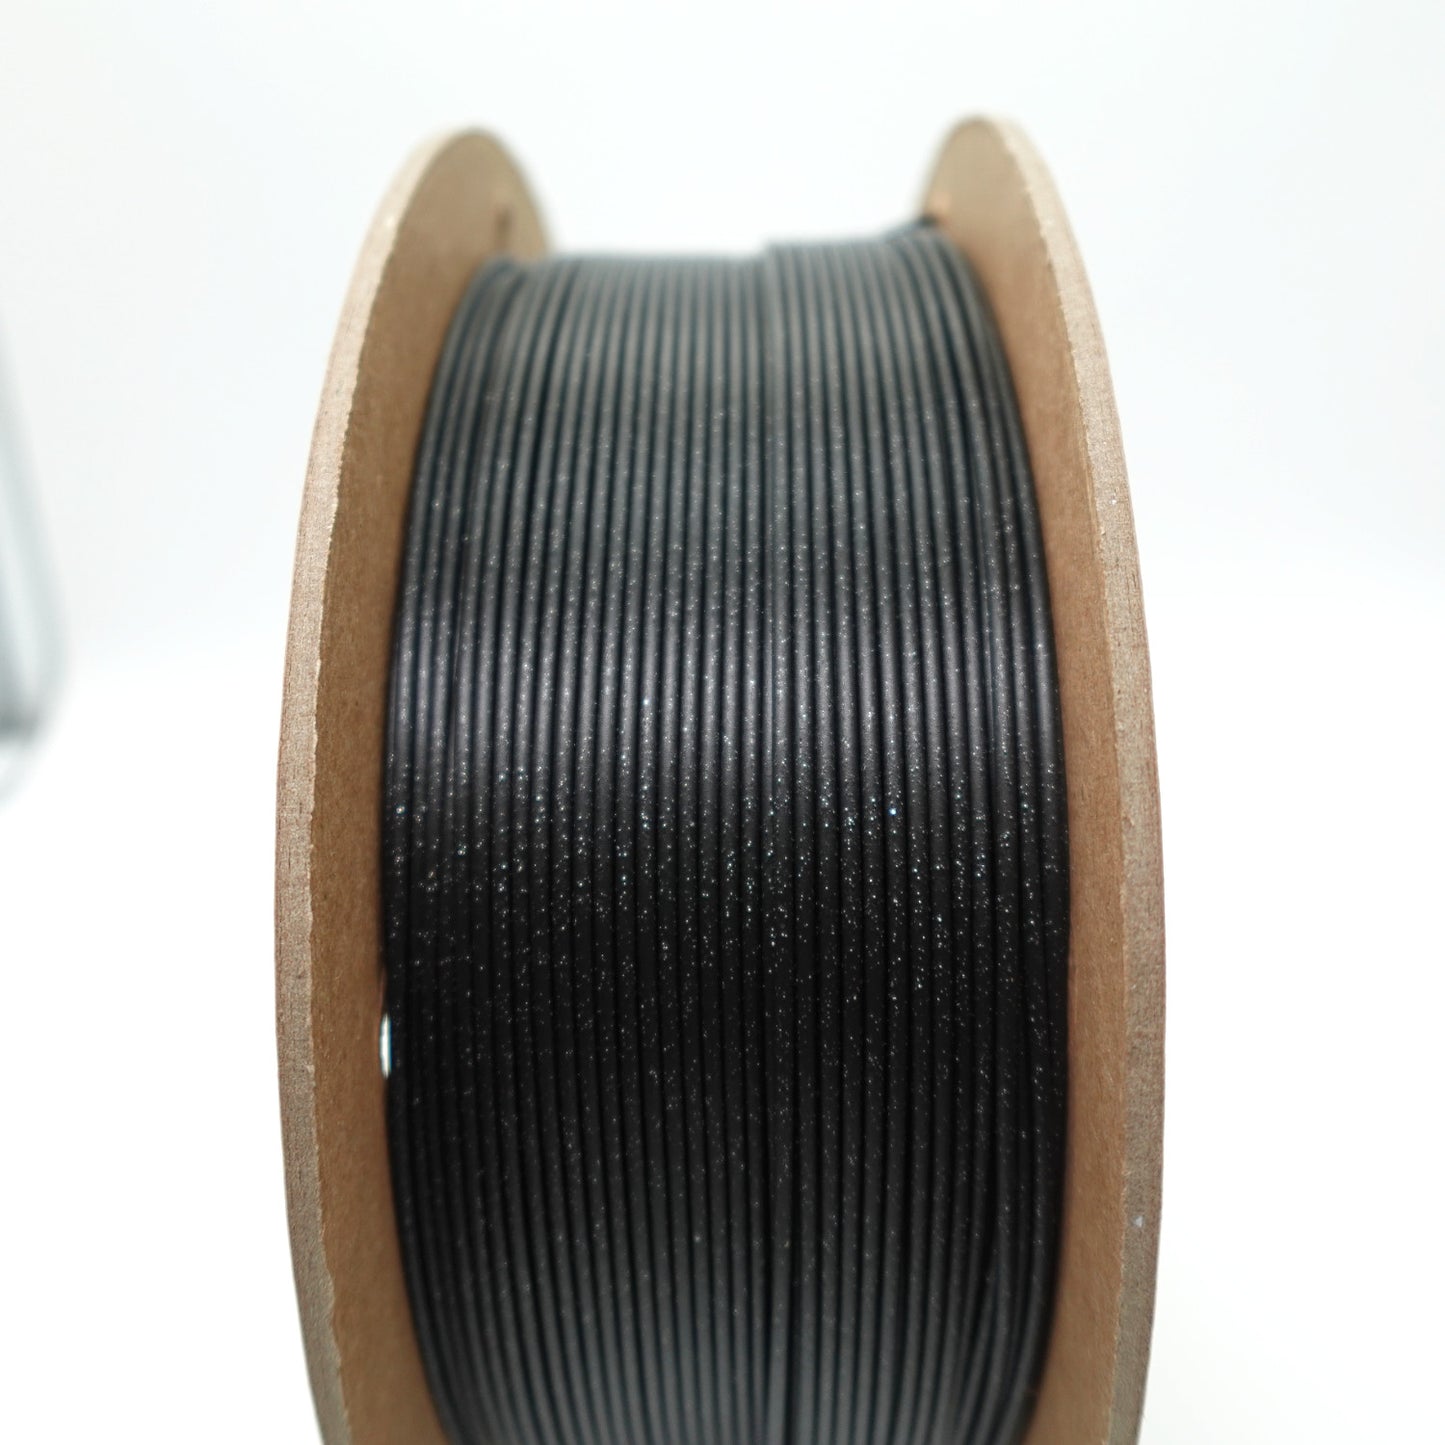 Galaxy Black PLA 3D Printing Filament Canada